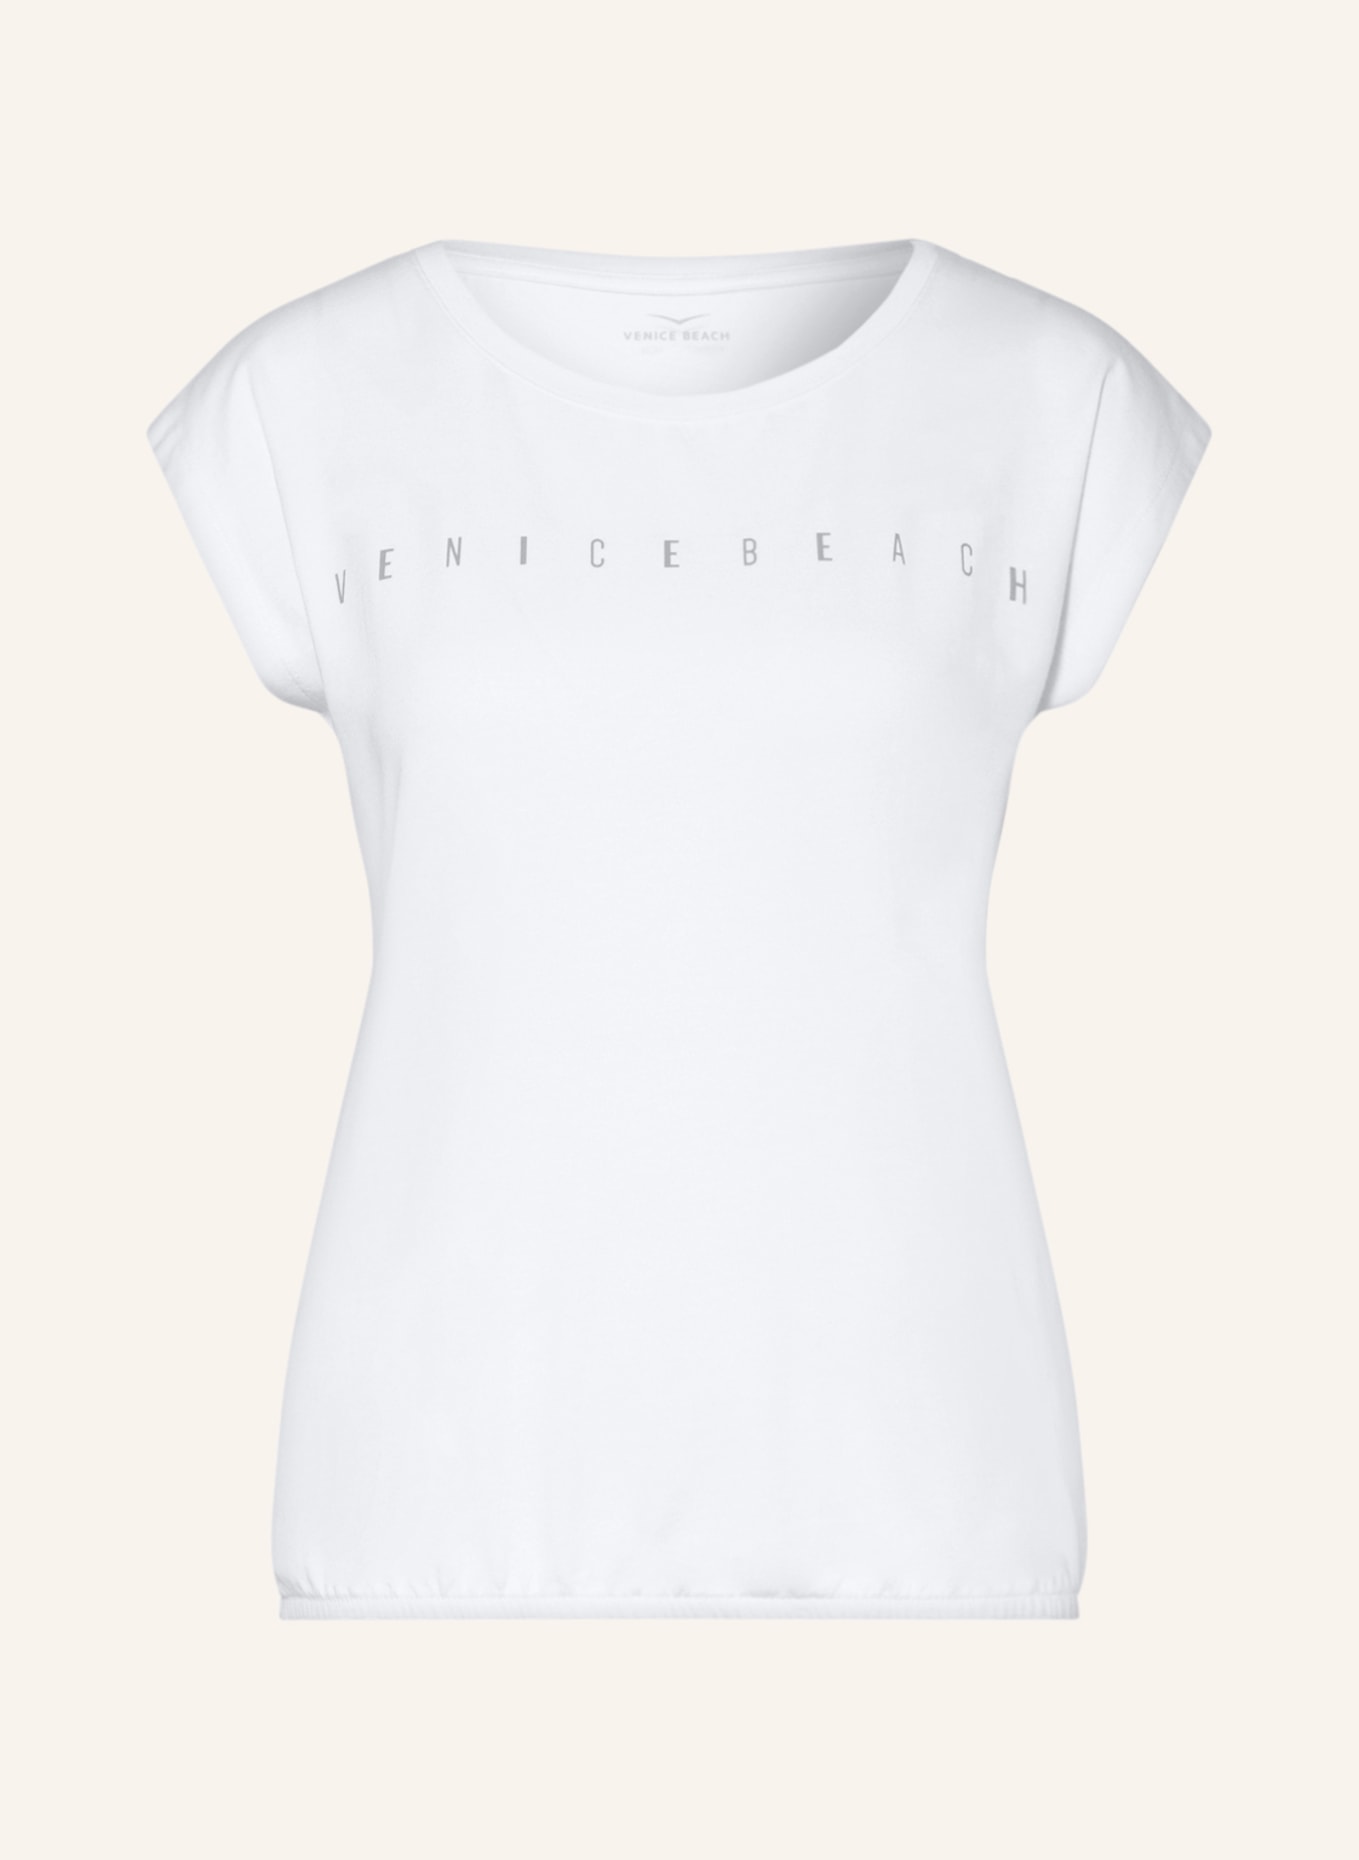 VENICE BEACH T-shirt WONDER, Color: WHITE (Image 1)